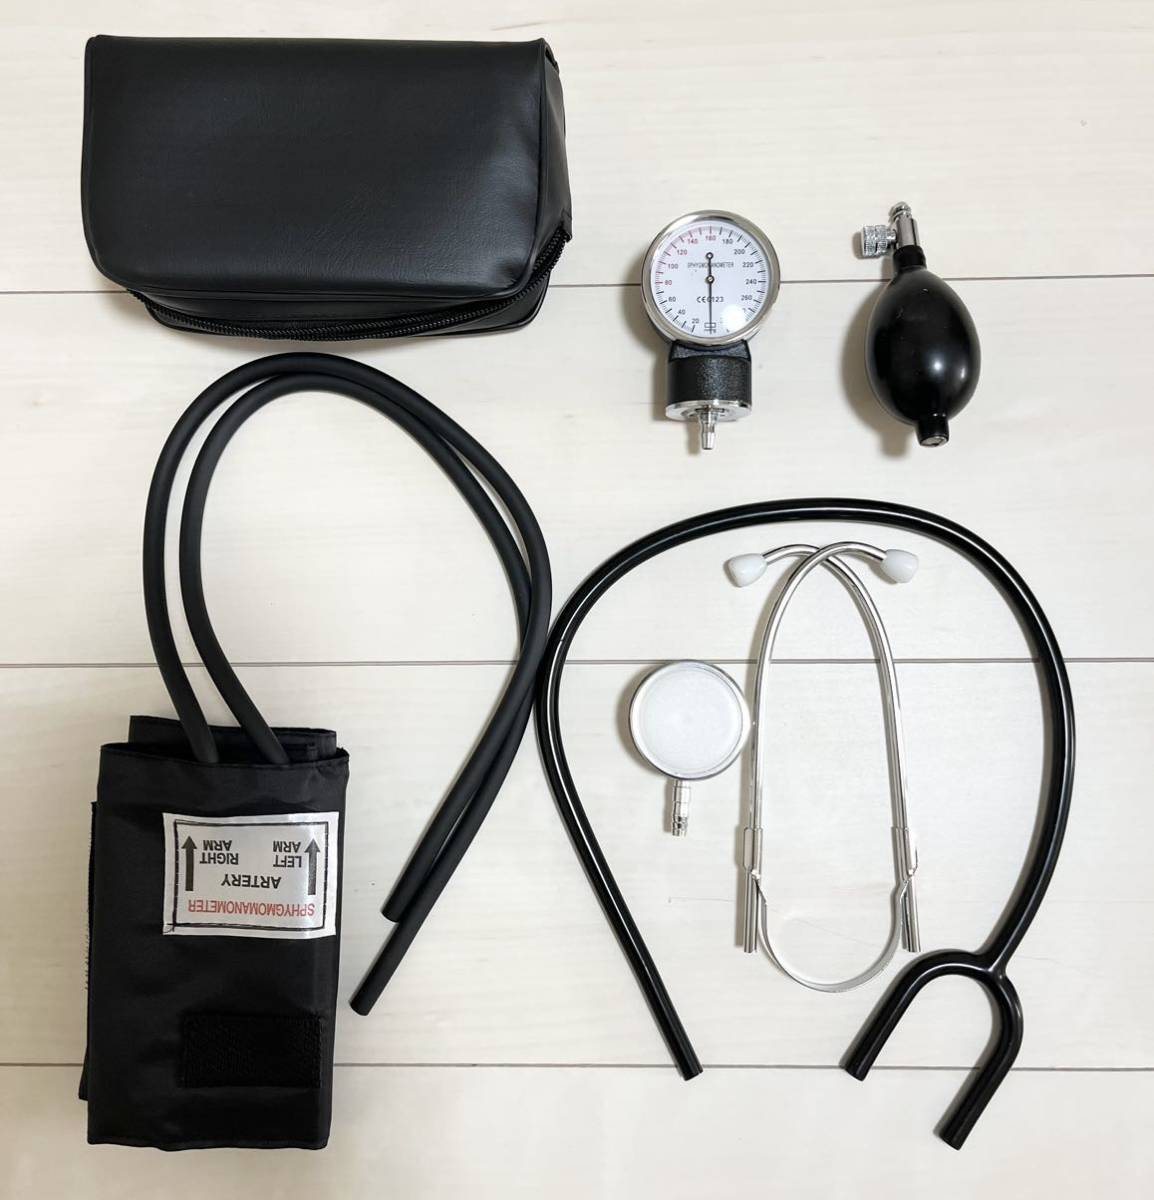 アネロイド式血圧計 血圧計 血圧測定器 マンシェット 新品未使用_画像3